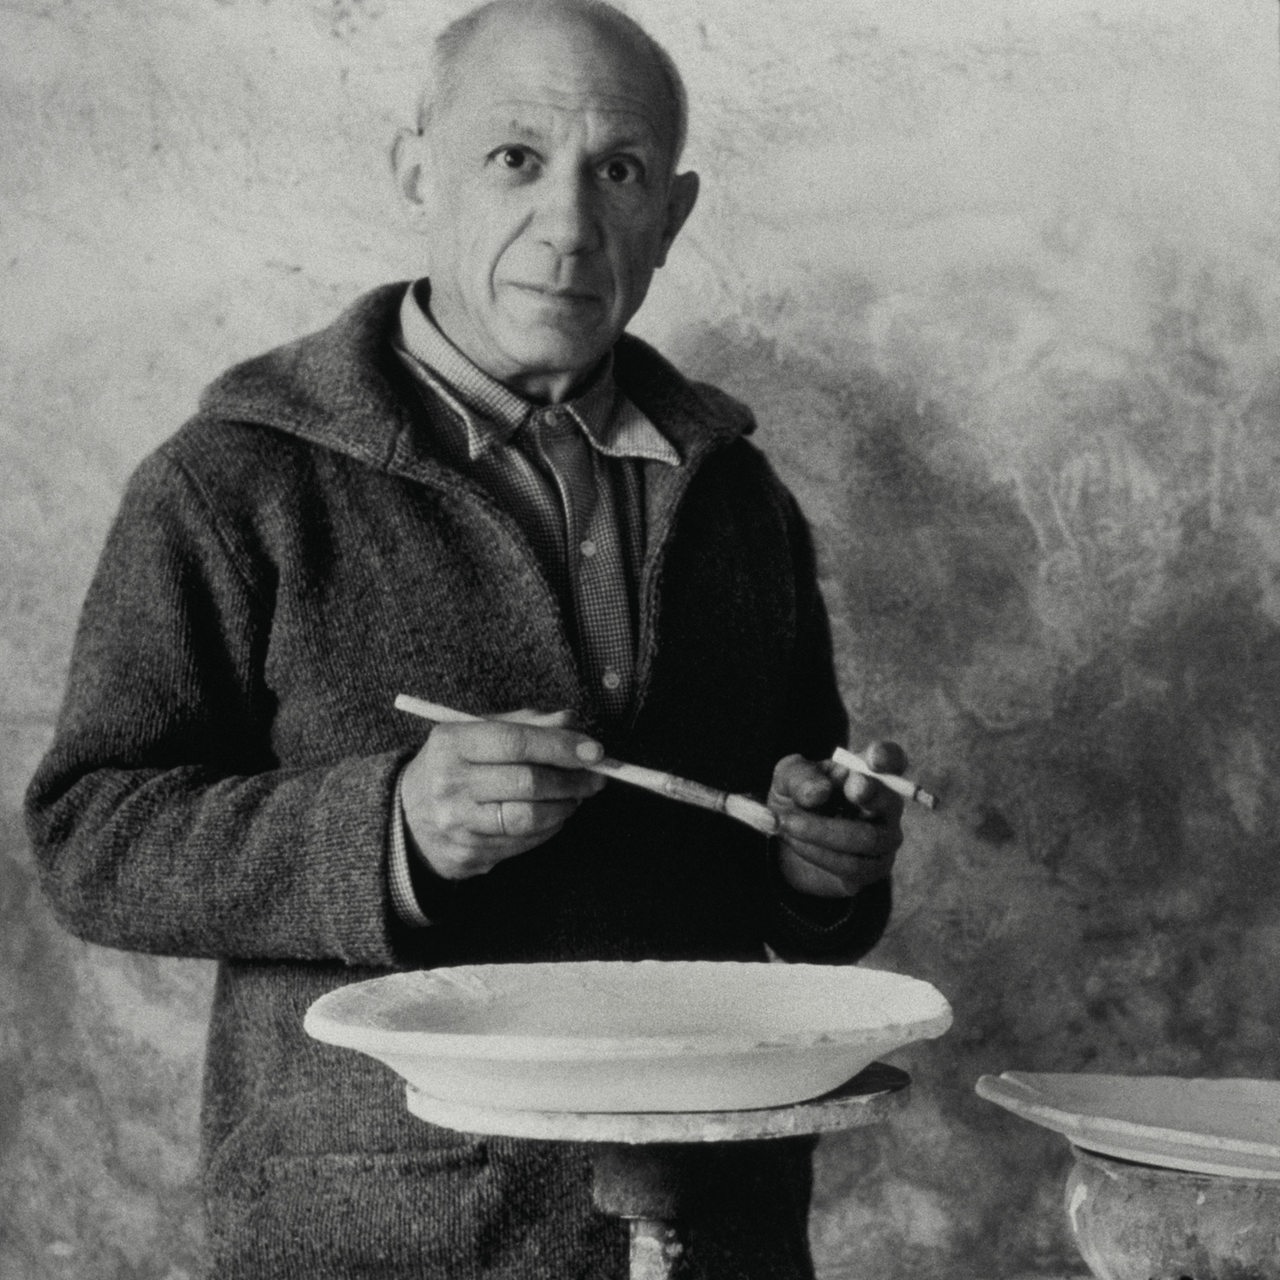 Der Maler Pablo Picasso auf einer Schwarzweiß-Fotografie mit Pinsel